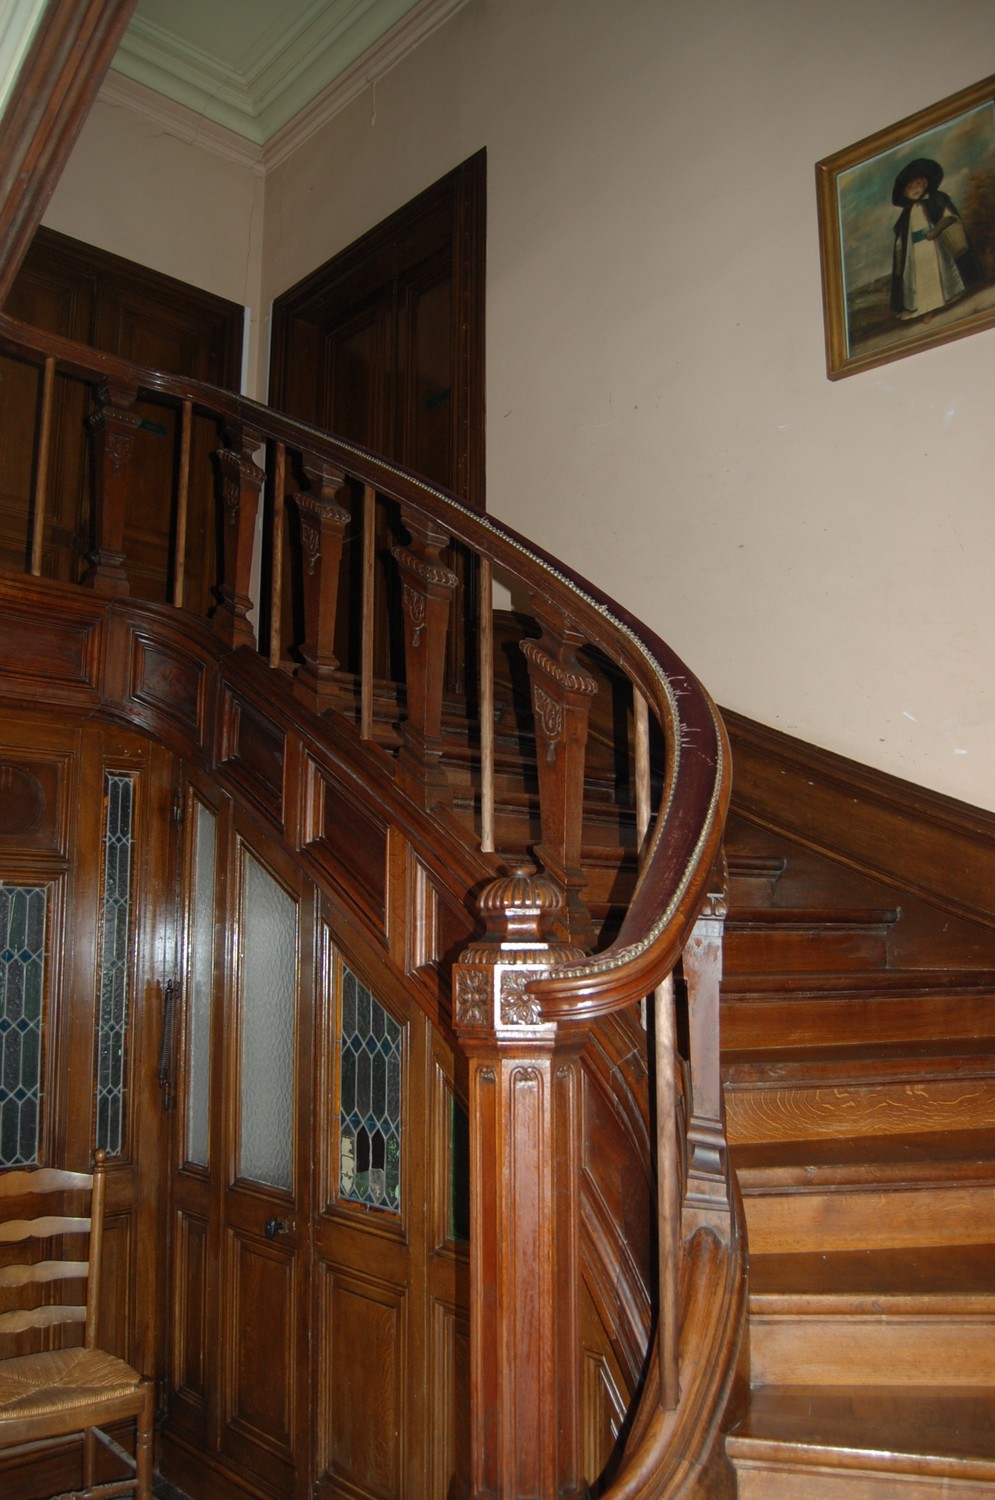 Escalier